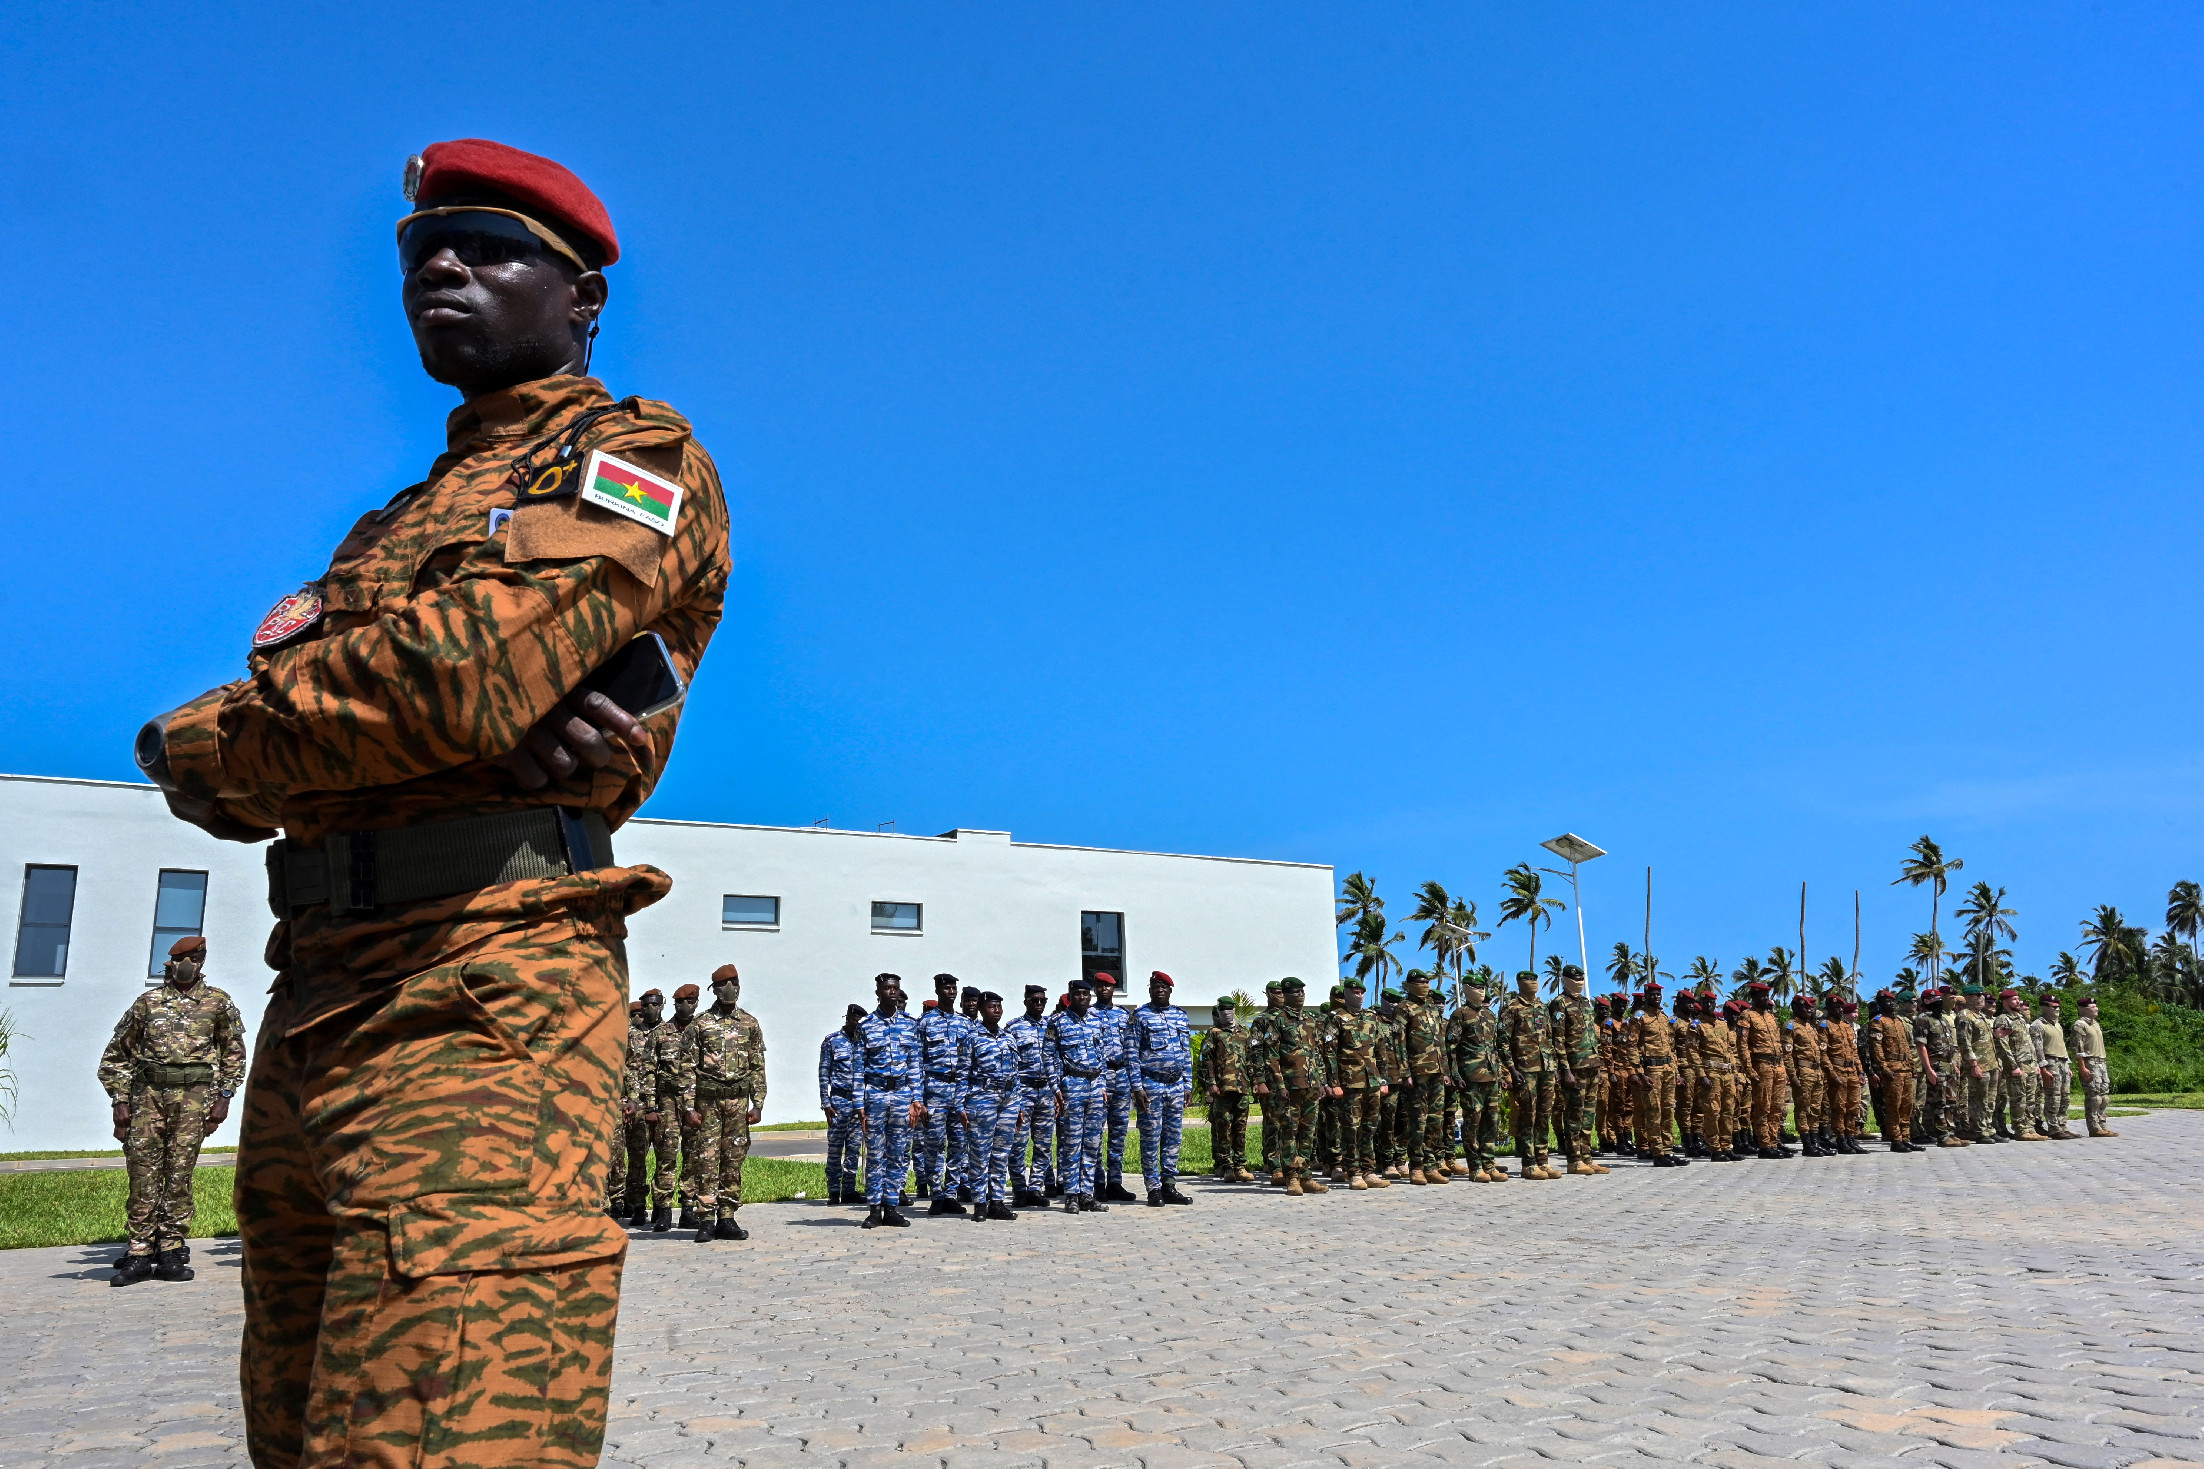 Legalább negyvenen életüket vesztették Burkina Fasóban egy katonai alakulat elleni támadásban